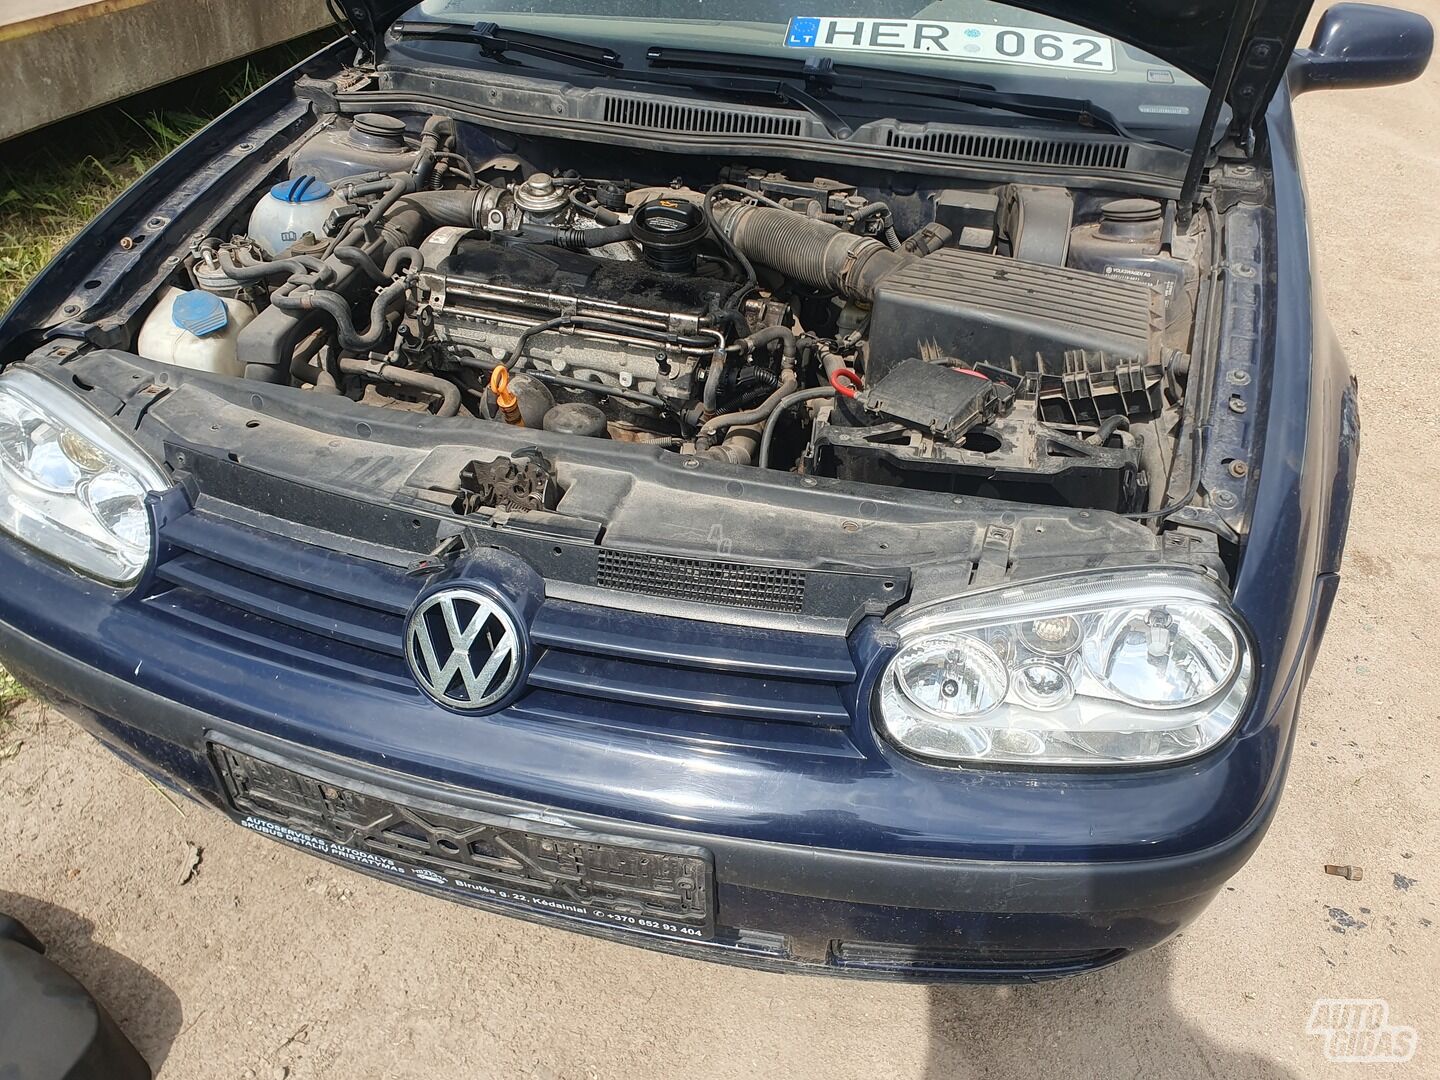 Volkswagen Golf 2002 m dalys